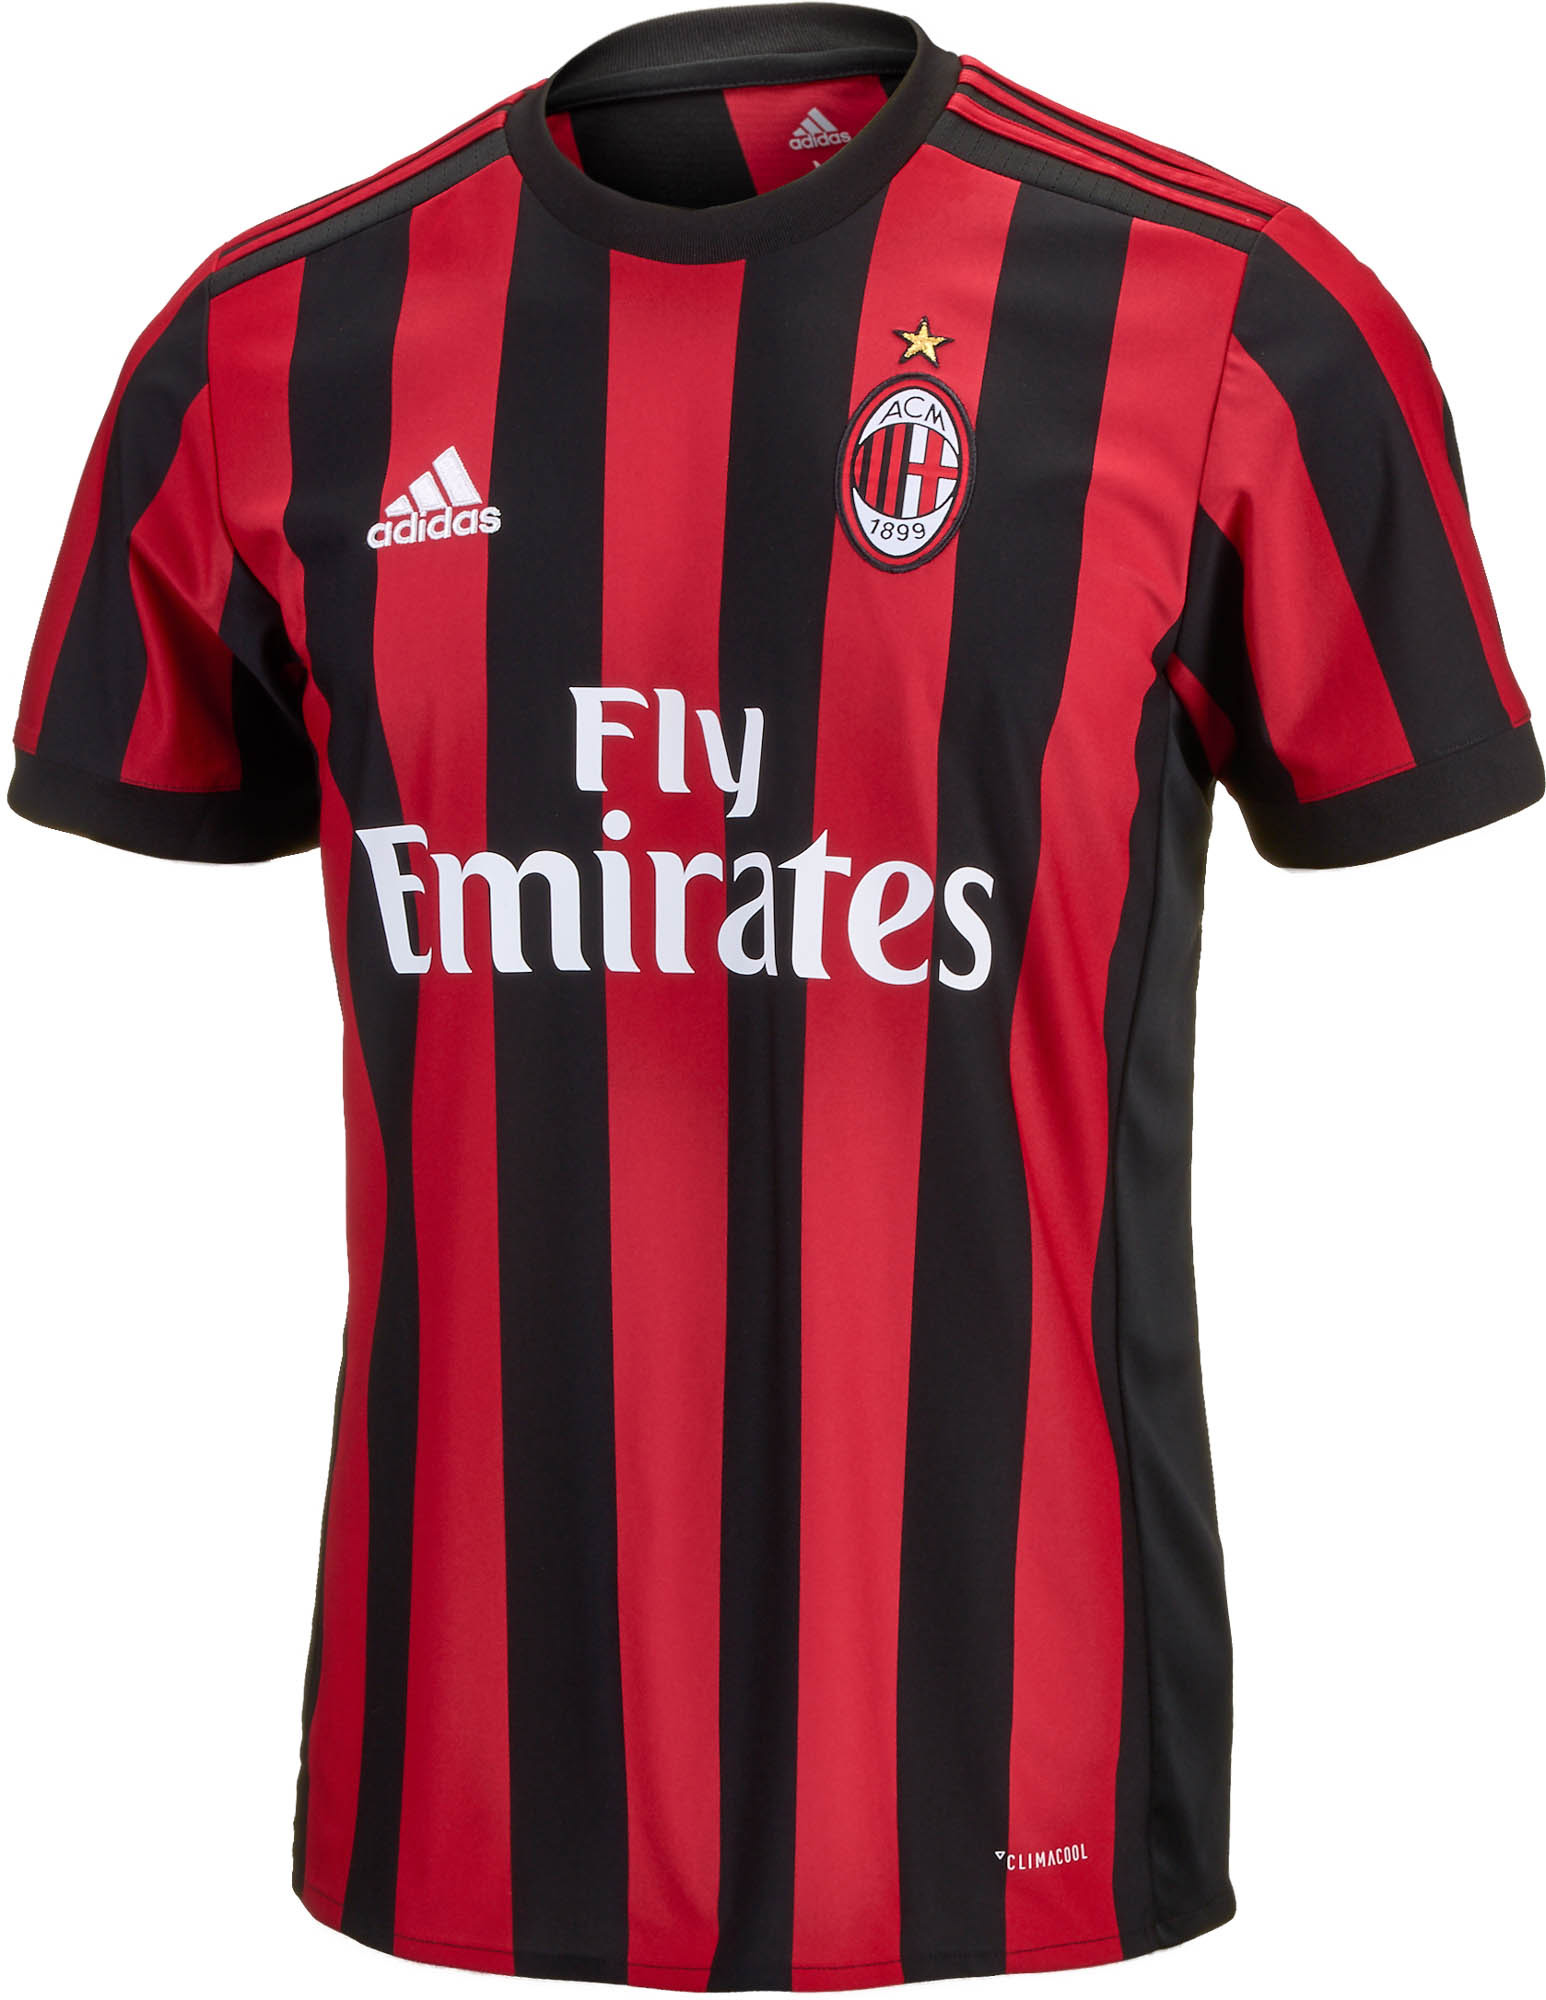 . herhaling plotseling 2017/18 AC Milan Home Jersey - AC Milan Soccer Jerseys